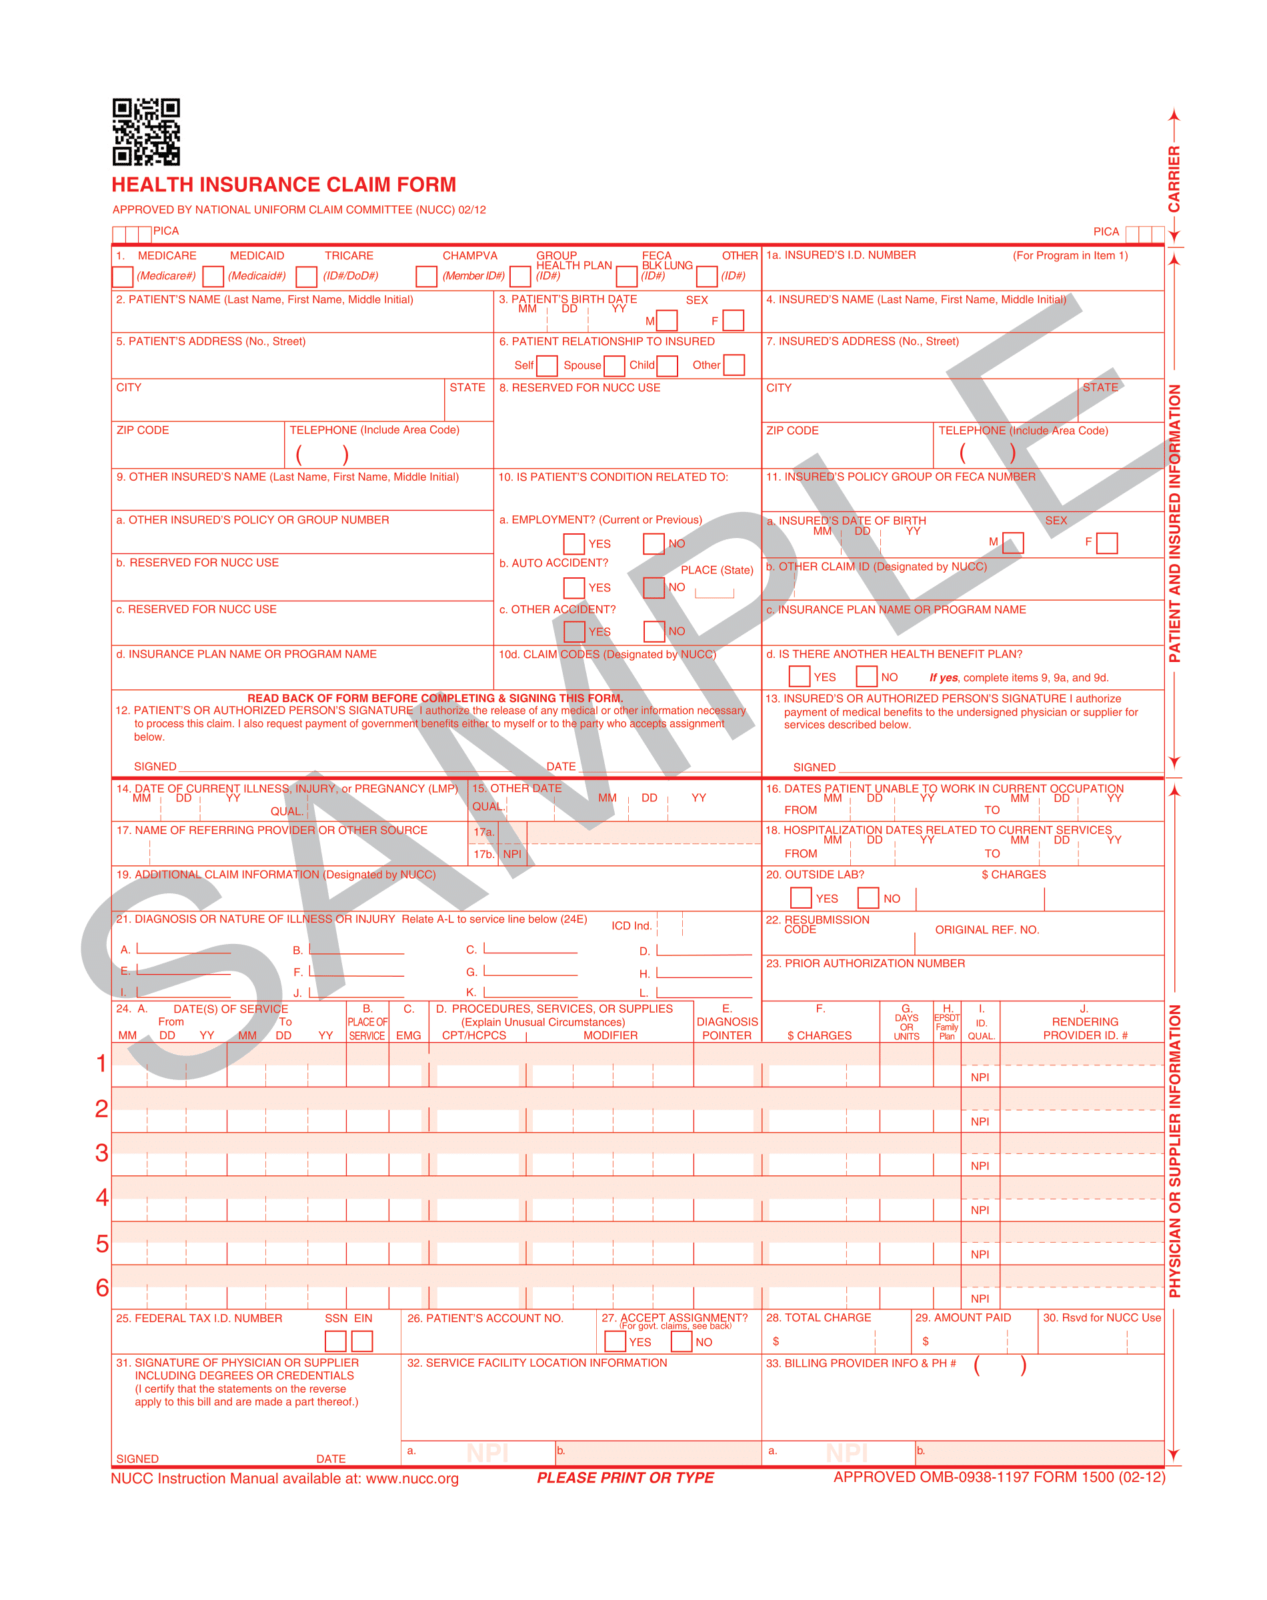 cms-1500-claim-form-sample-hcfa-1500-claim-form-pdf